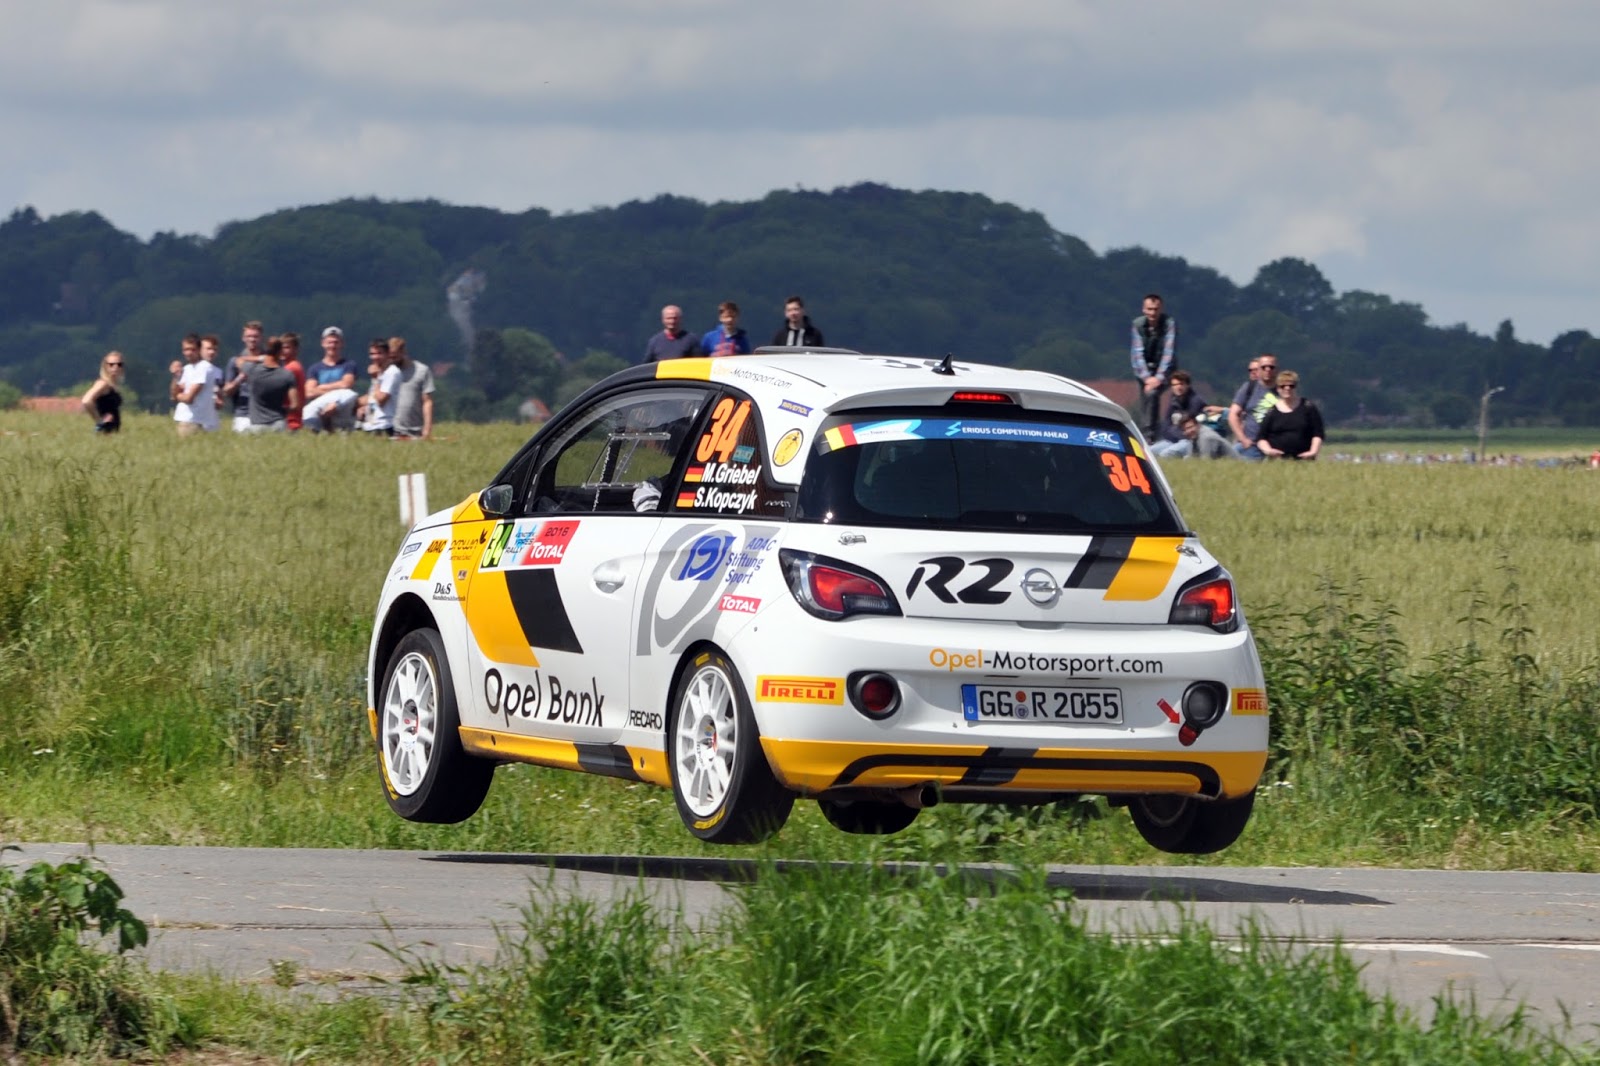 2016 Opel ADAM R2 Rallye Ypern 302176 Τα τρία εργοστασιακά ADAM R2 έγραψαν ιστορία στο Kenotek Ypres Rally τερματίζοντας στις 3 πρώτες θέσεις!